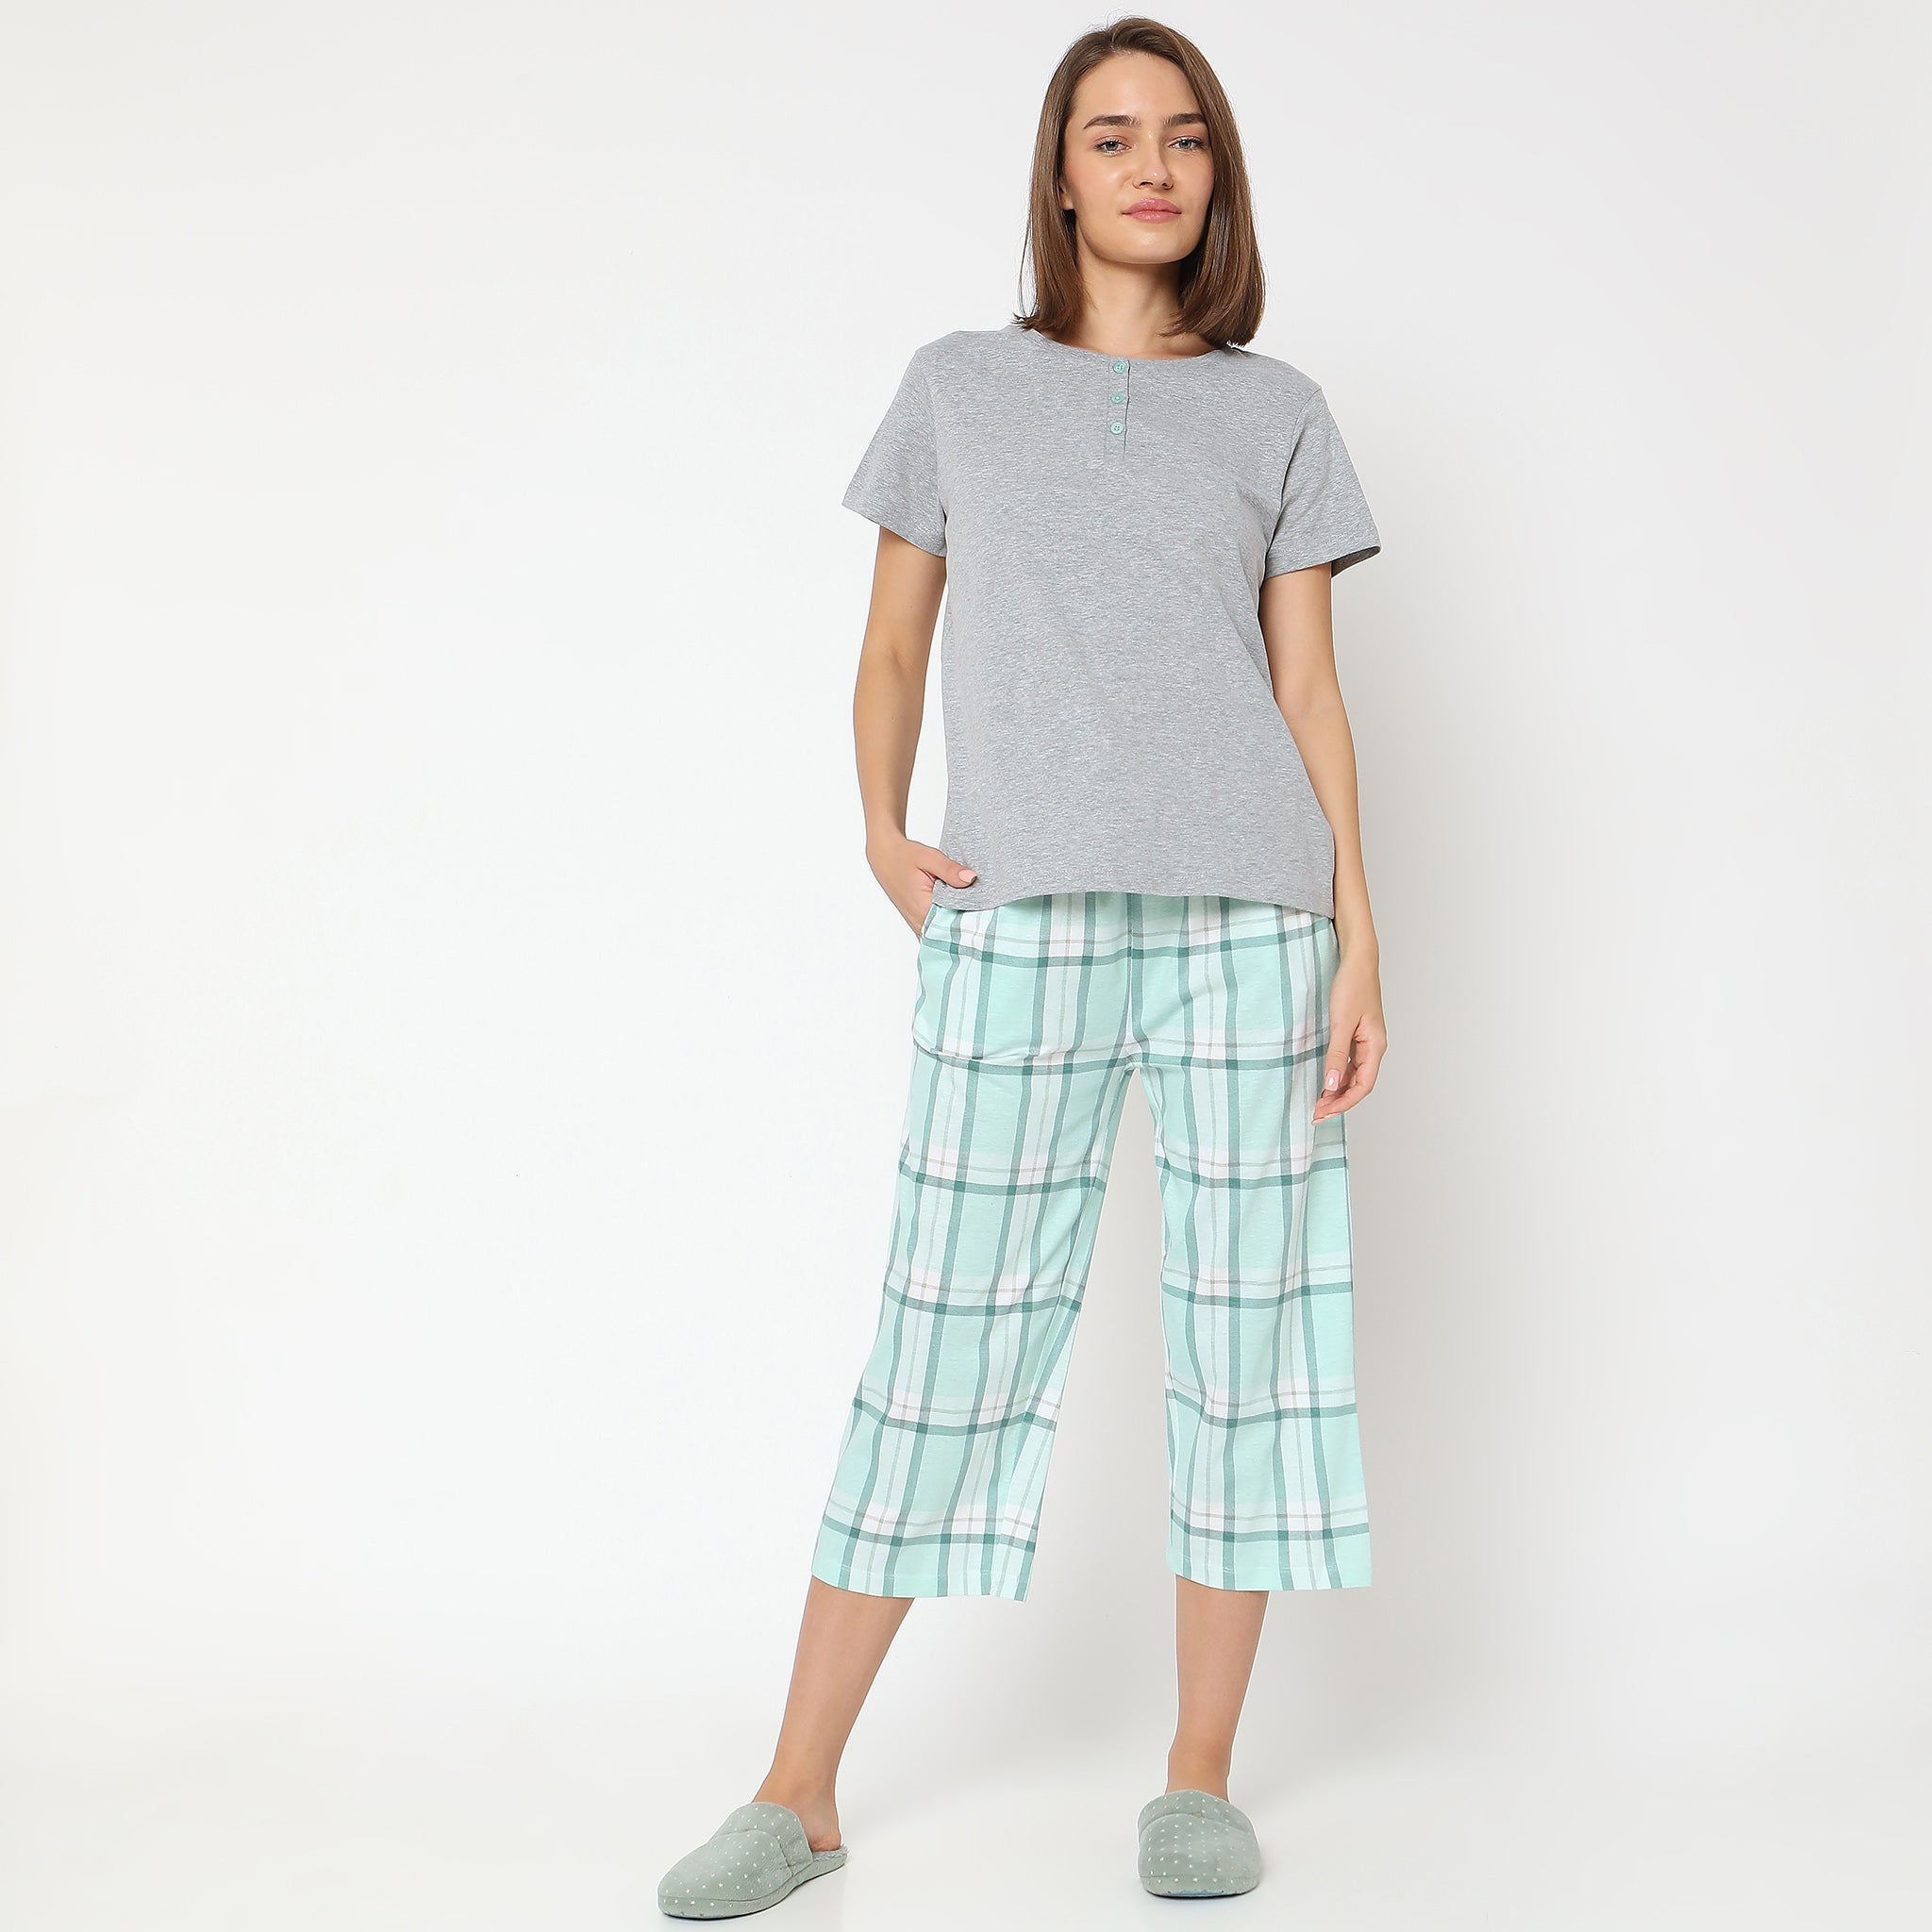 Women Wearing Regular Fit Solid Sleepwear Set